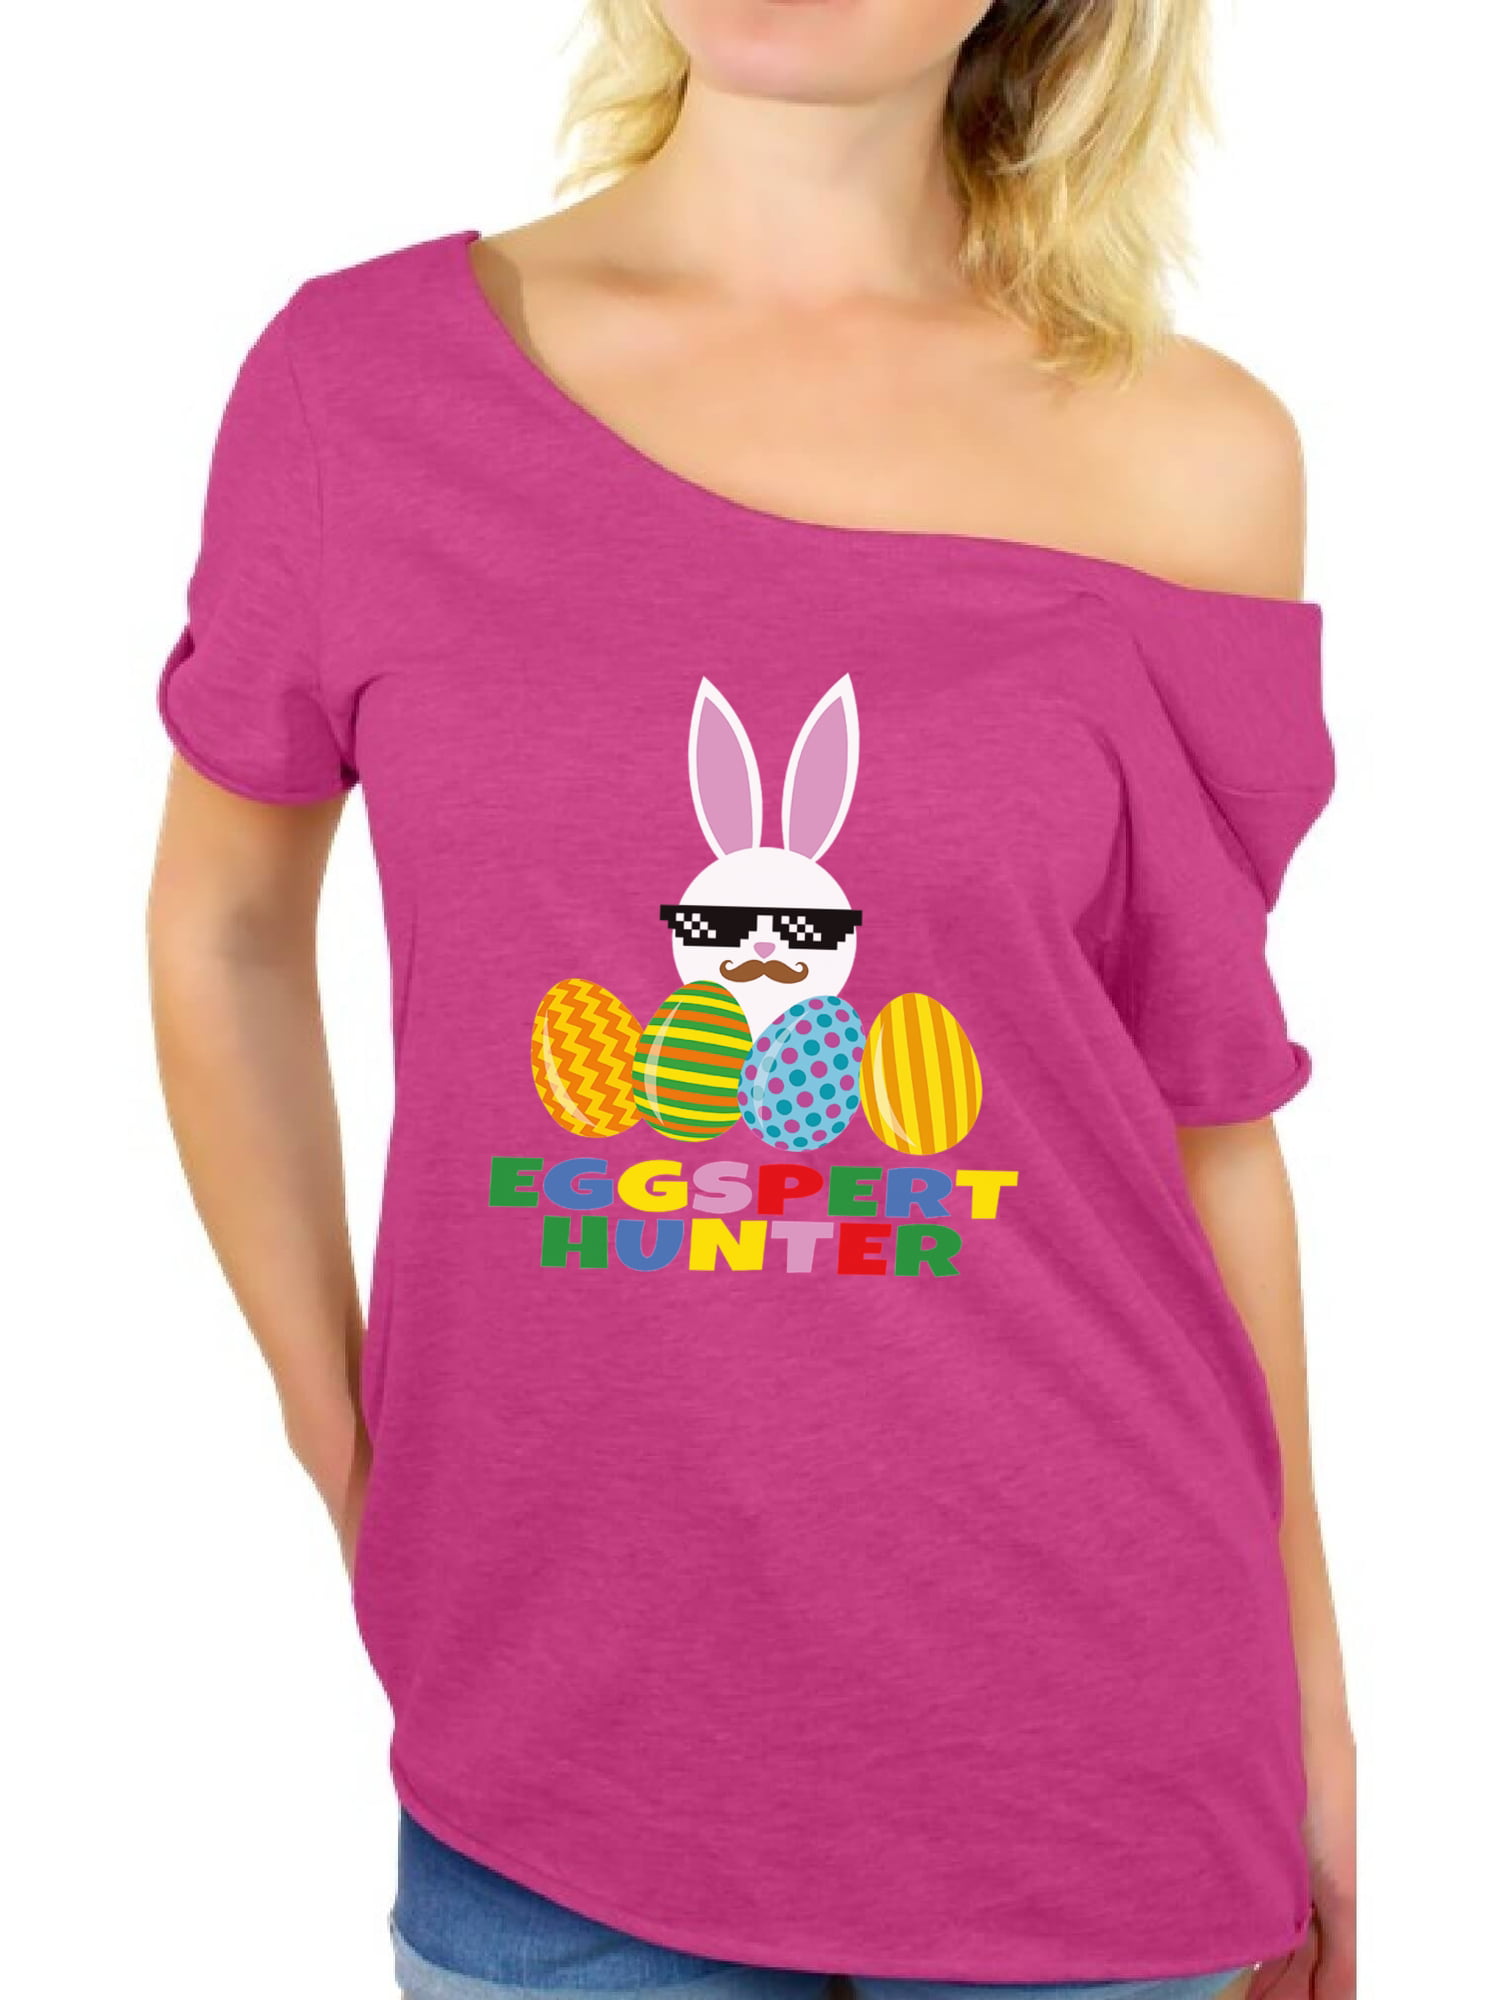 Awkward Styles Eggspert Hunter Off Shoulder Shirt Easter T Shirt Women ...